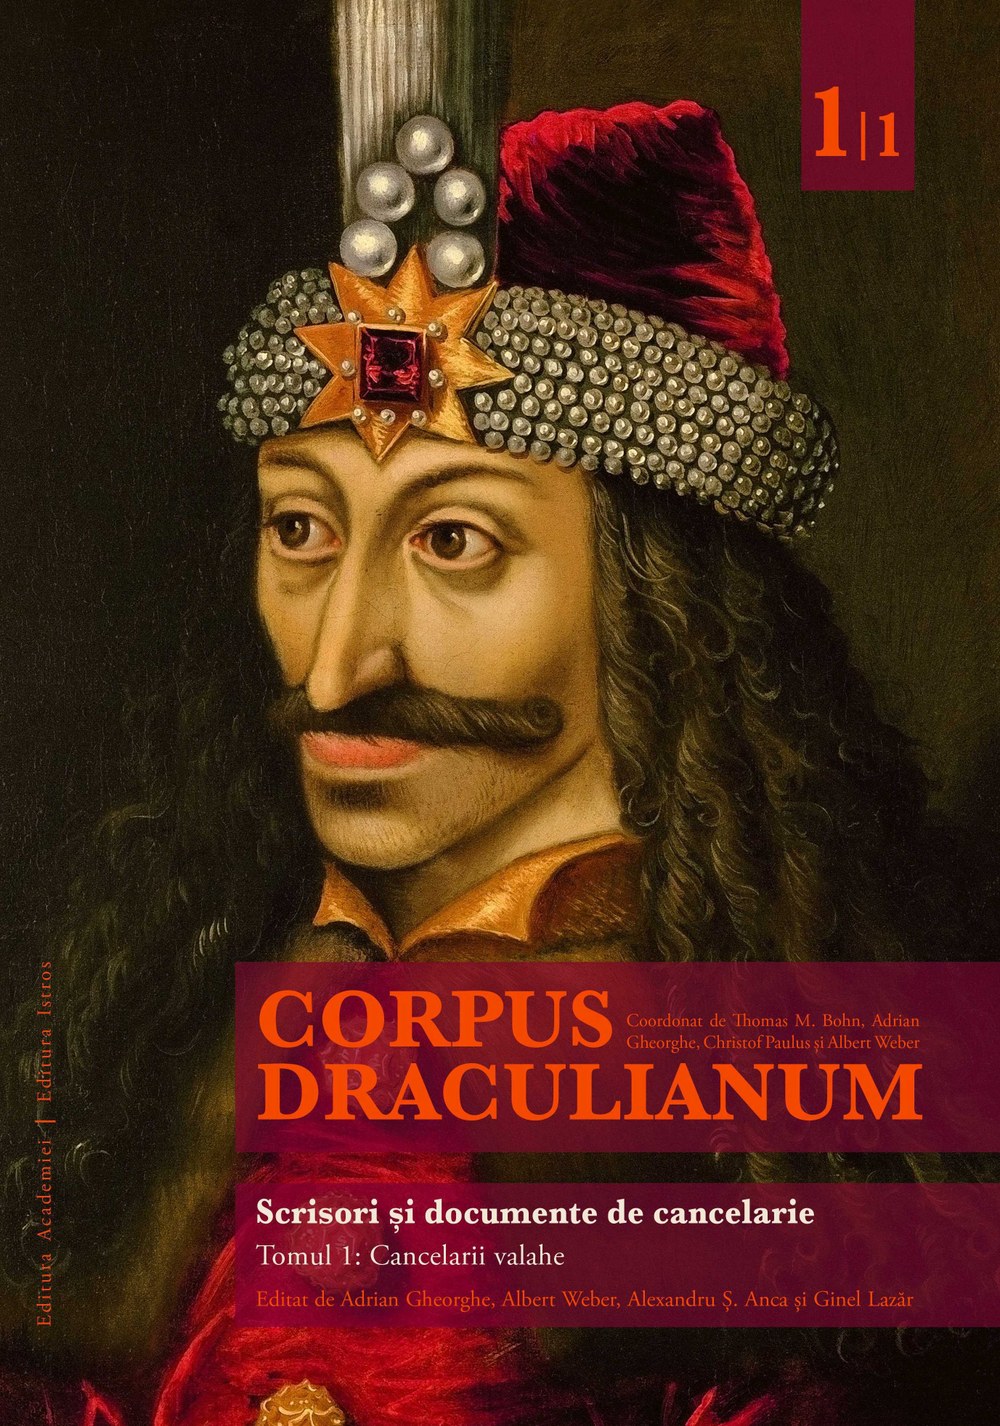 Corpus Draculianum 1.1